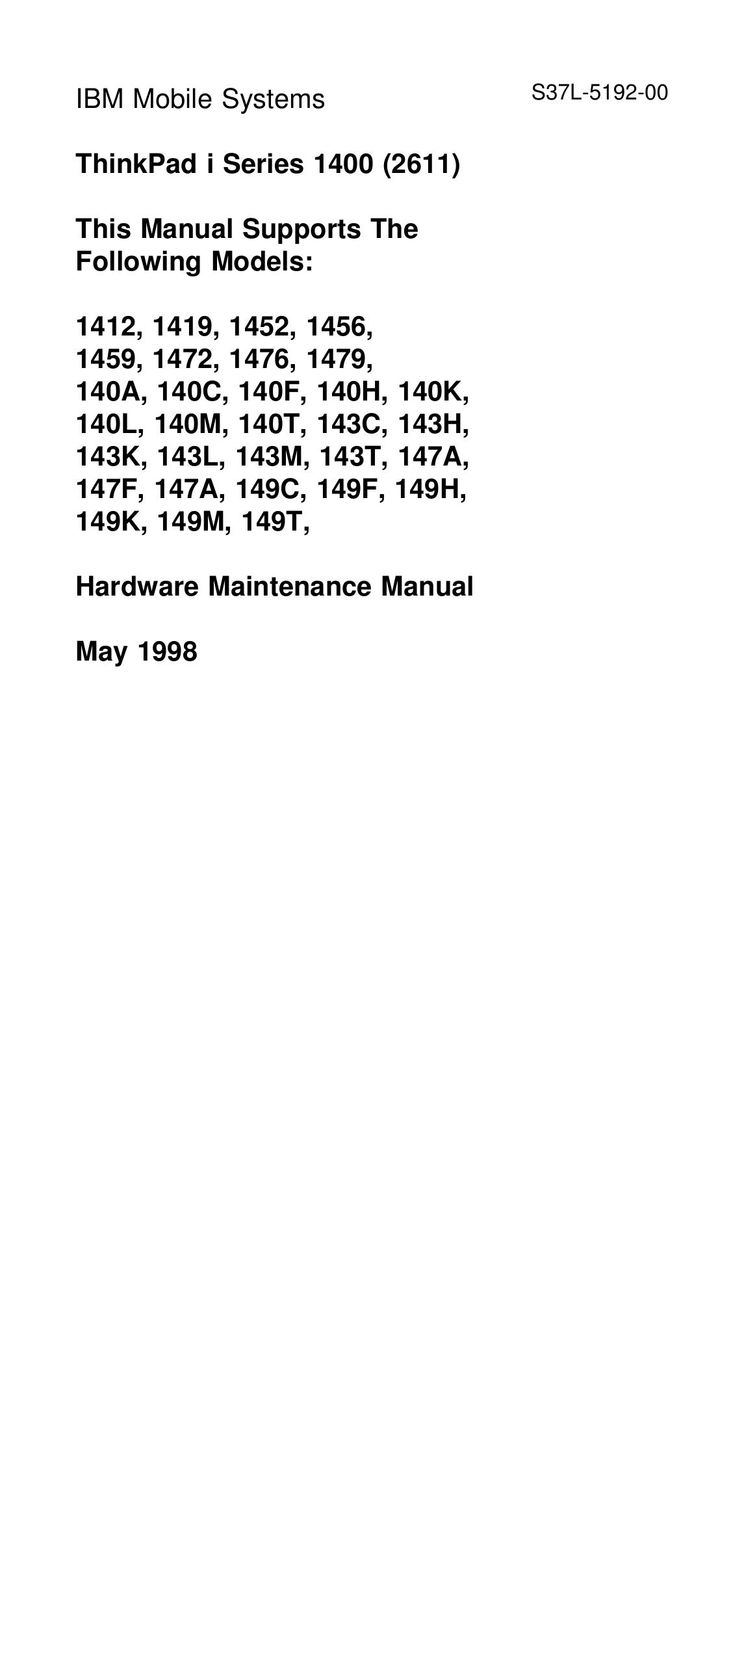 IBM 1456 Laptop User Manual